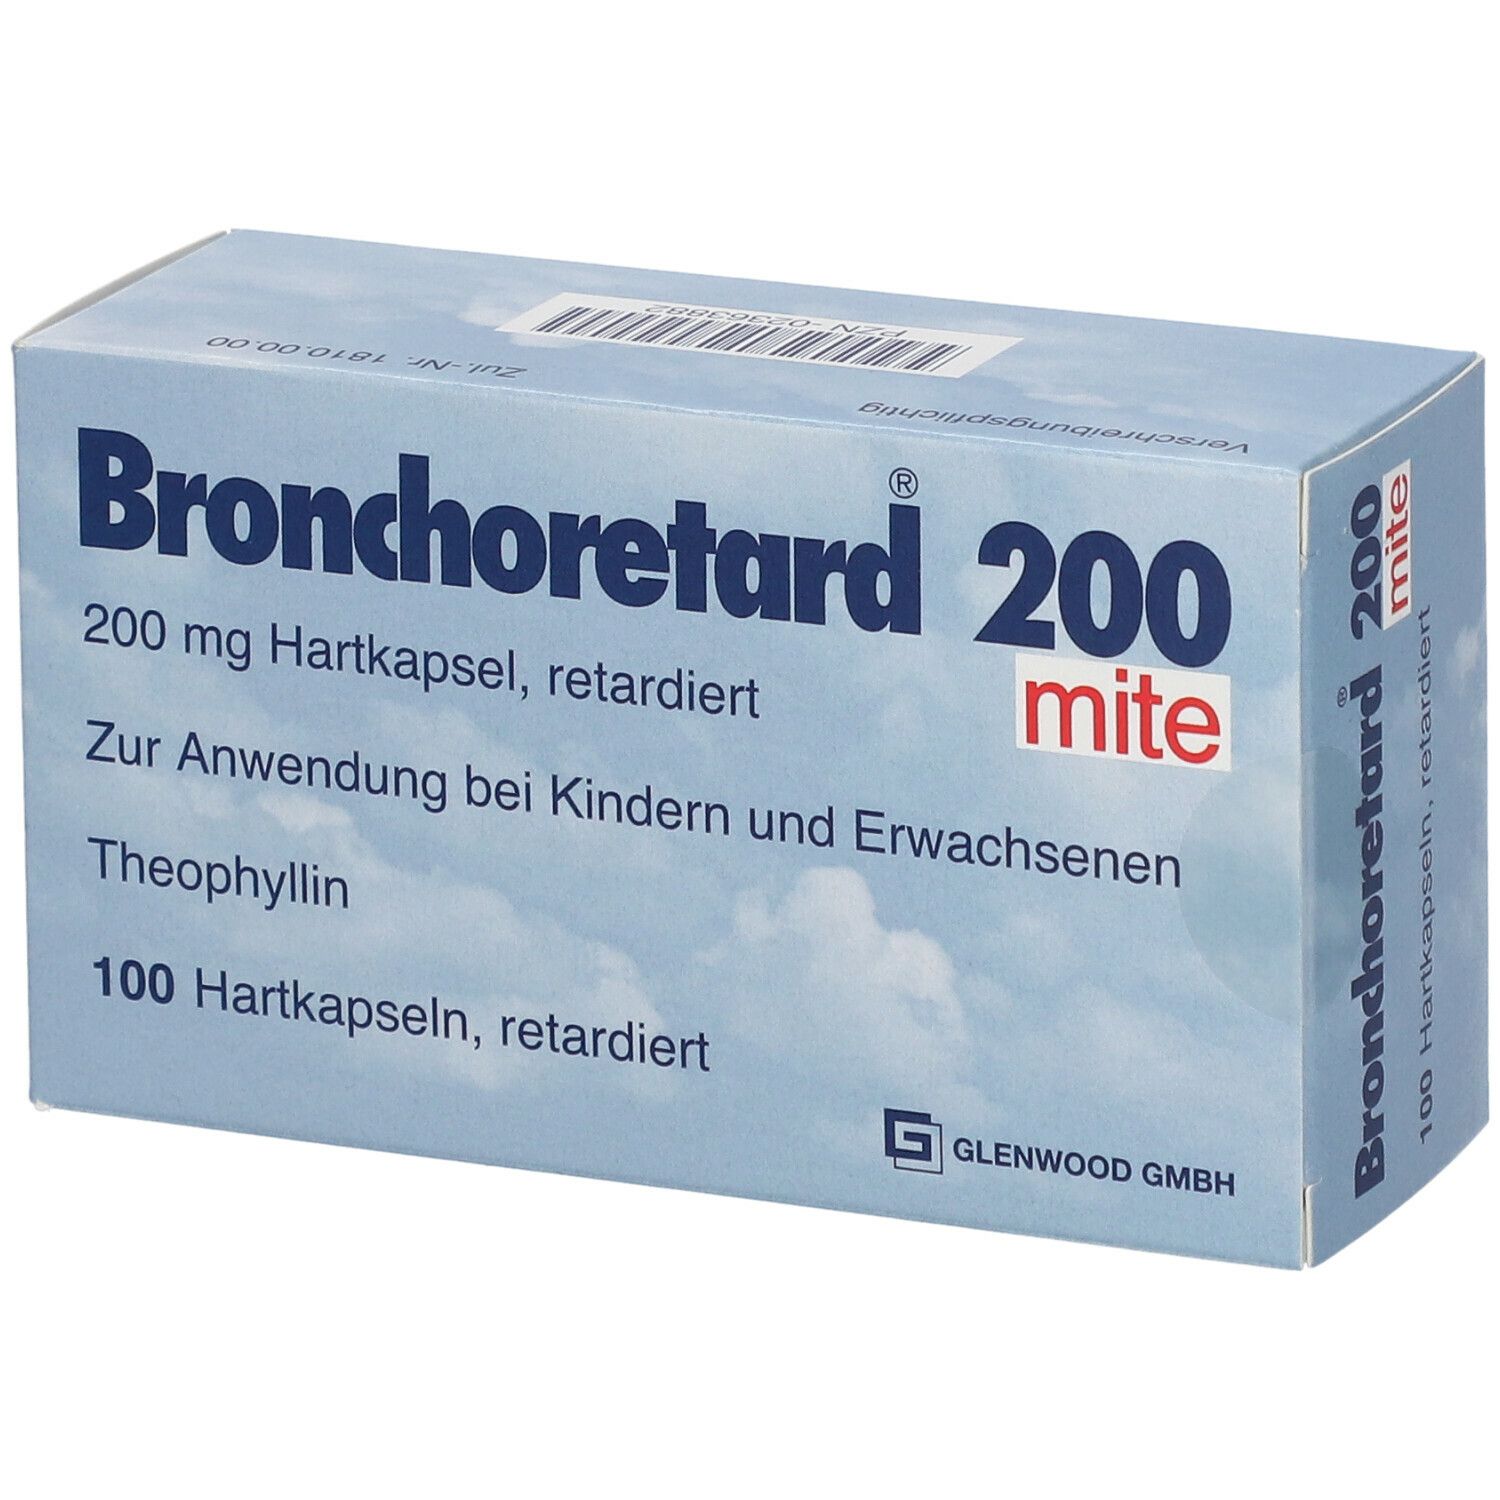 Bronchoretard® 200 mite